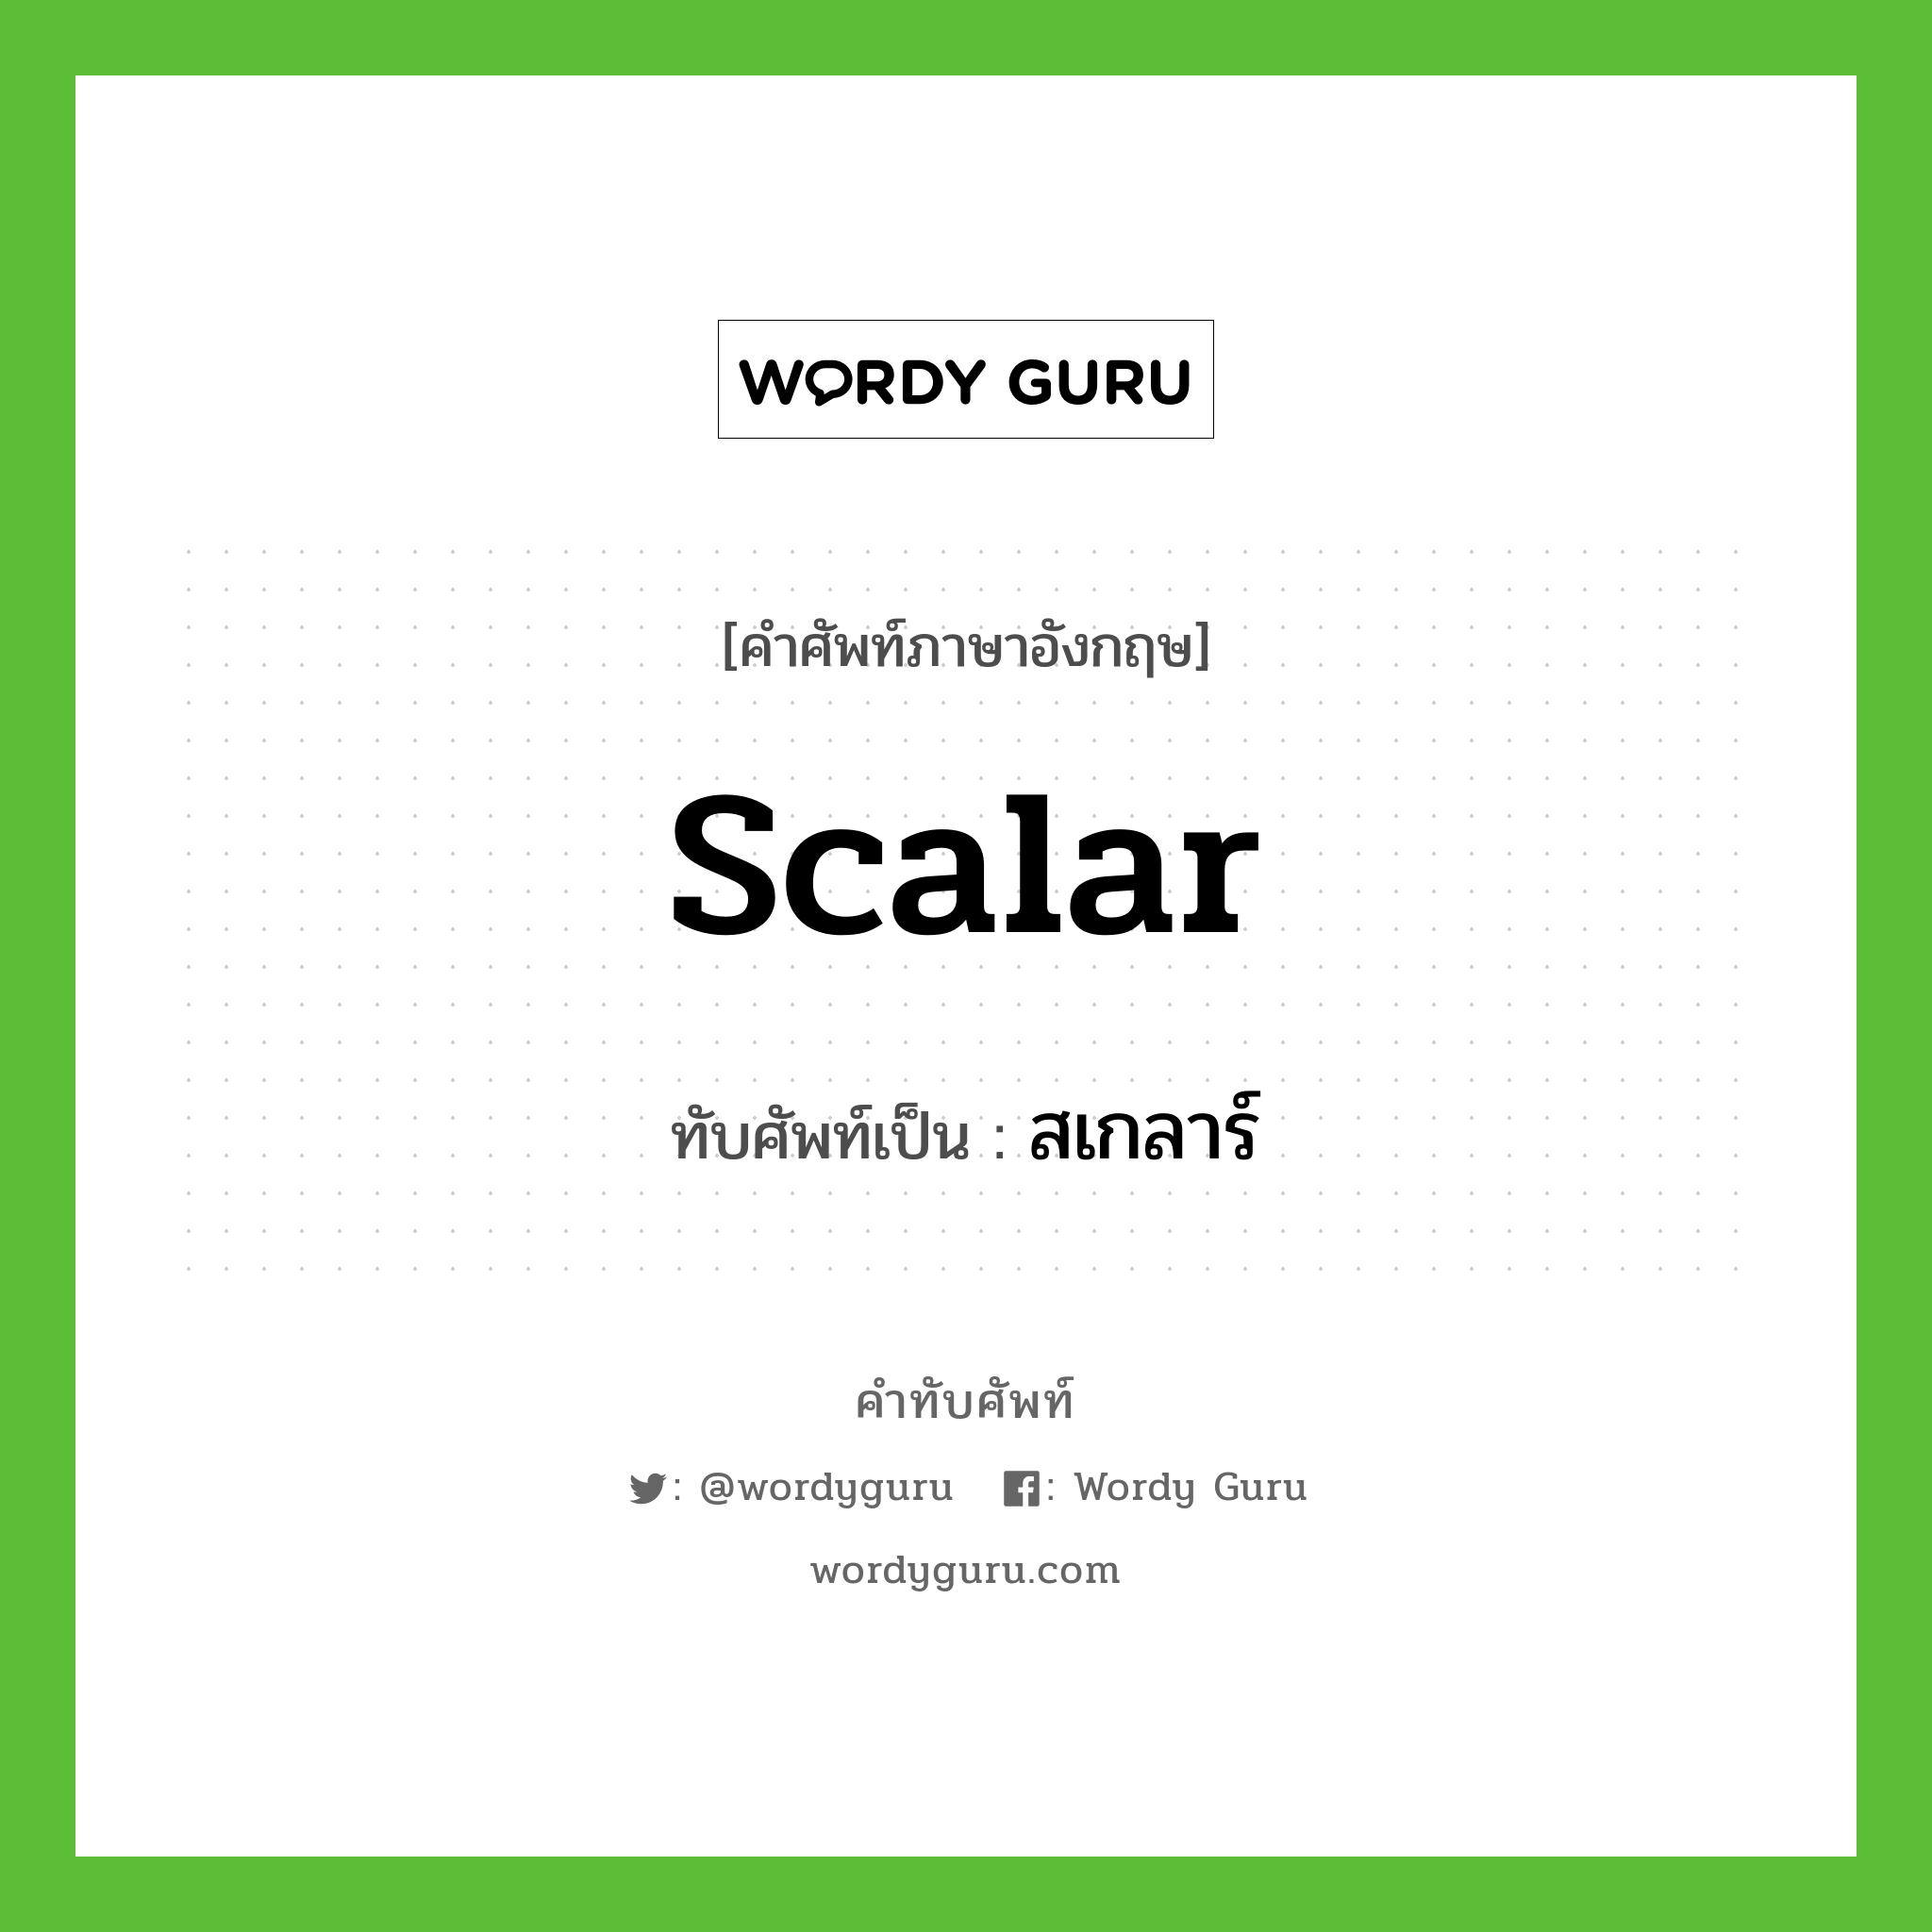 scalar เขียนเป็นคำไทยว่าอะไร?, คำศัพท์ภาษาอังกฤษ scalar ทับศัพท์เป็น สเกลาร์